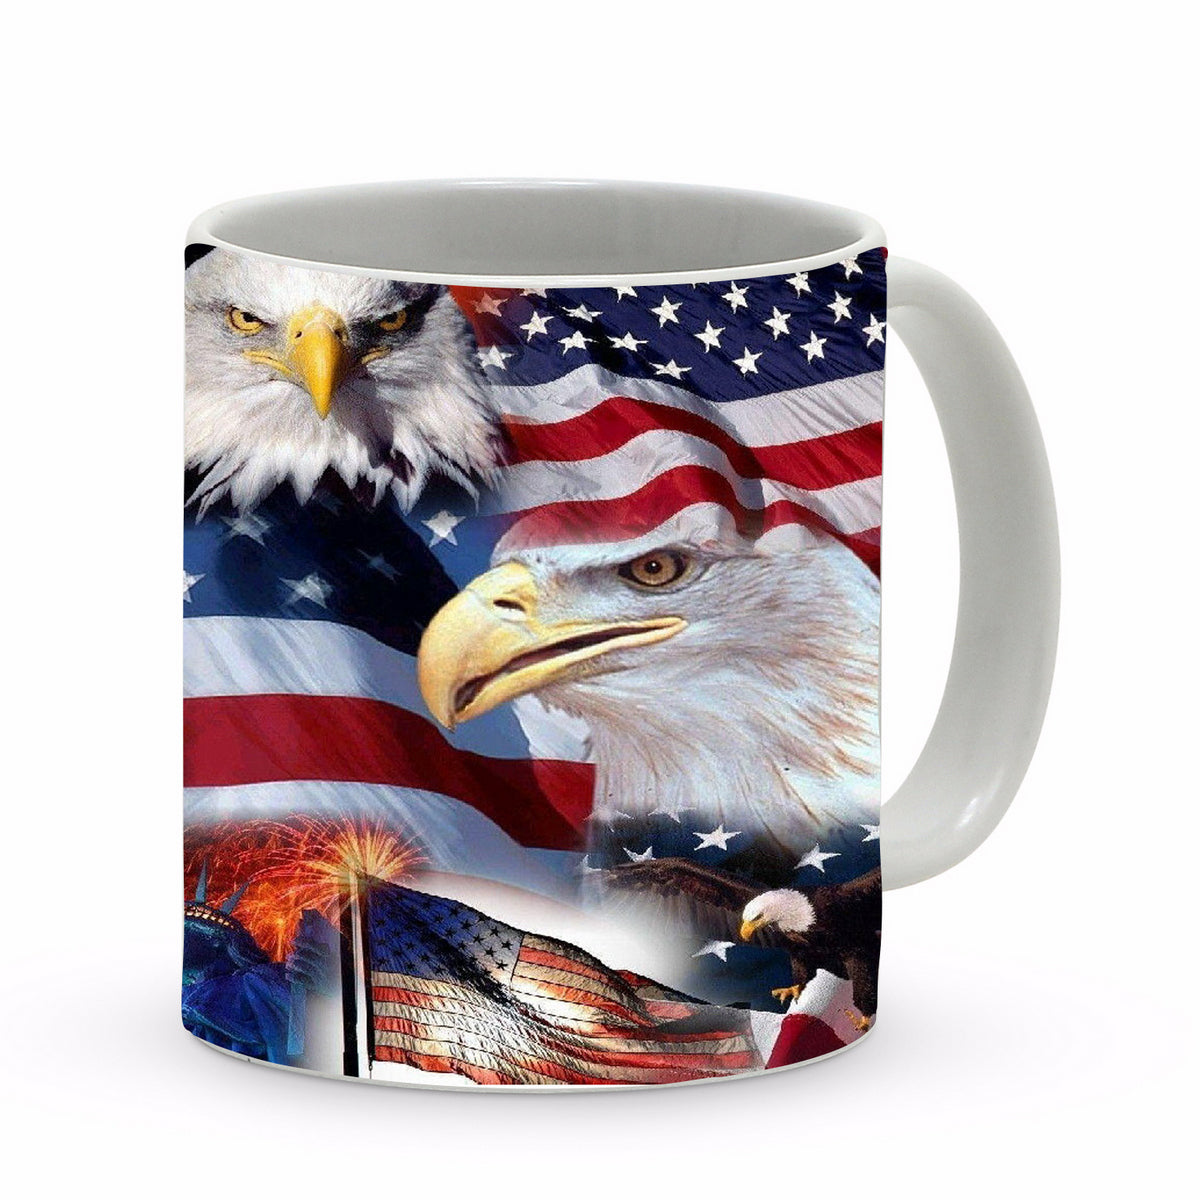 SUBLIMART: Patriotic Mug 'Multi Eagle Reflections' (Design 35)